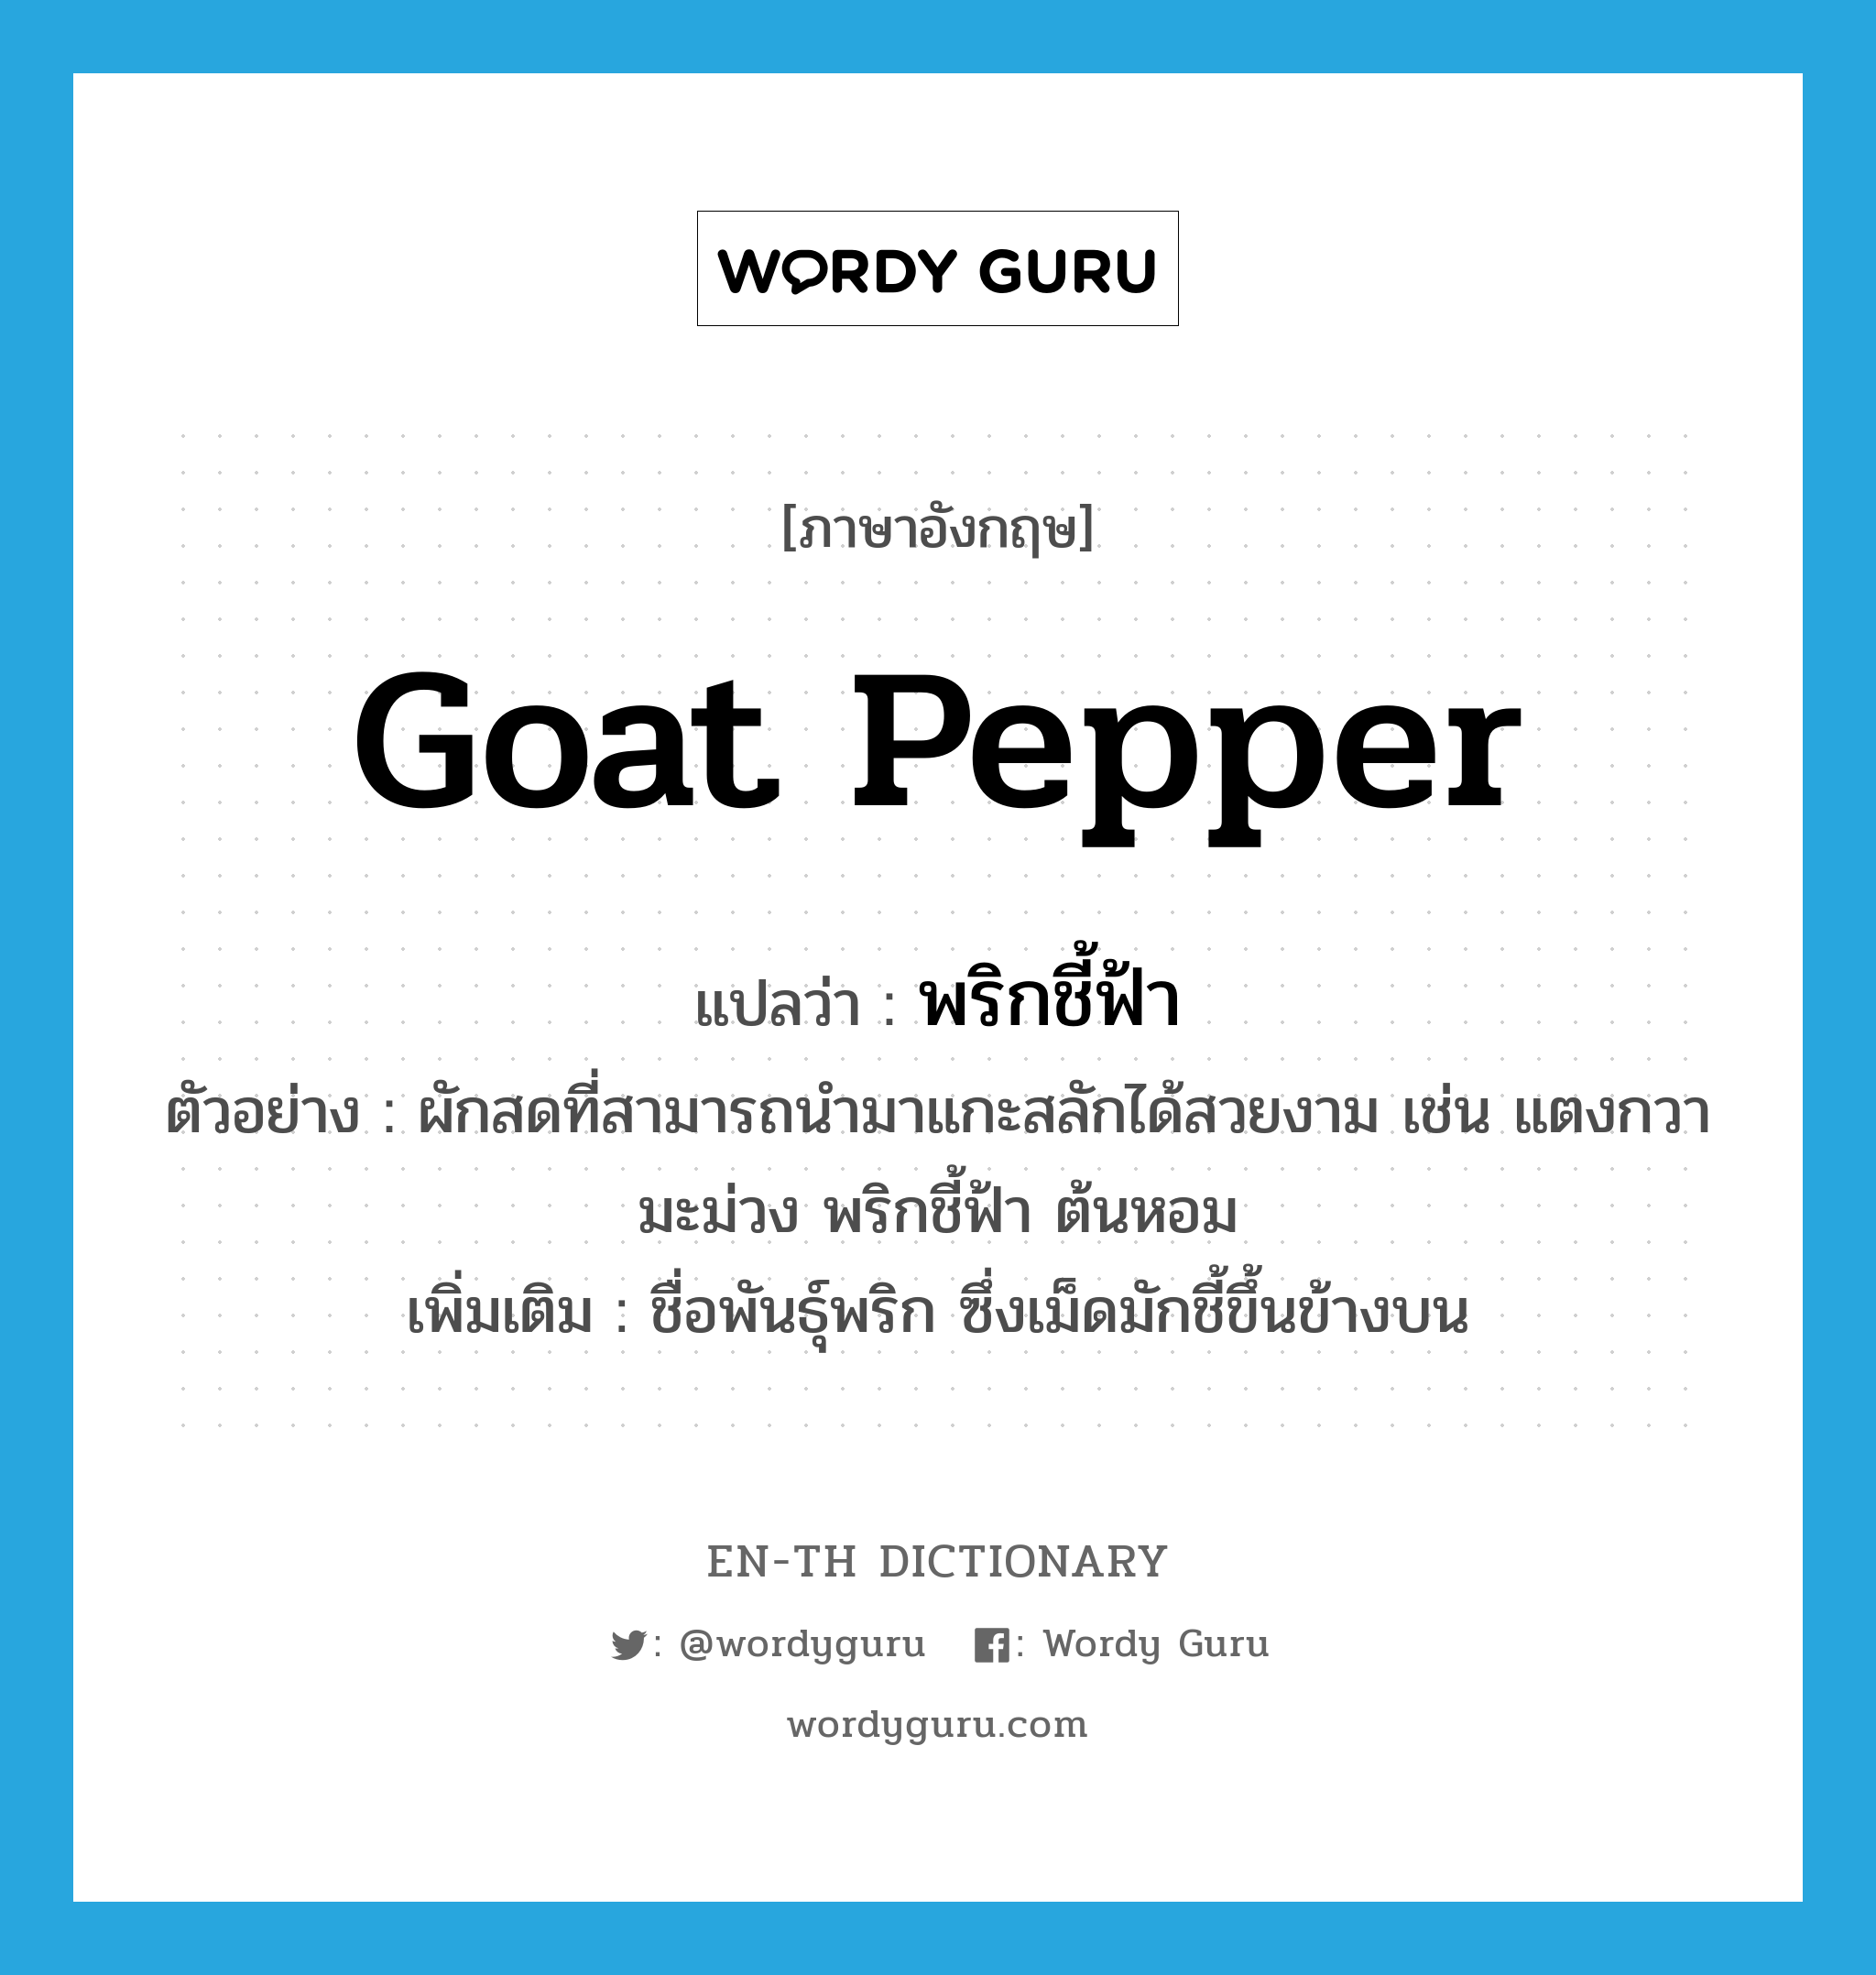 goat pepper แปลว่า?, คำศัพท์ภาษาอังกฤษ goat pepper แปลว่า พริกชี้ฟ้า ประเภท N ตัวอย่าง ผักสดที่สามารถนำมาแกะสลักได้สวยงาม เช่น แตงกวา มะม่วง พริกชี้ฟ้า ต้นหอม เพิ่มเติม ชื่อพันธุ์พริก ซึ่งเม็ดมักชี้ขึ้นข้างบน หมวด N